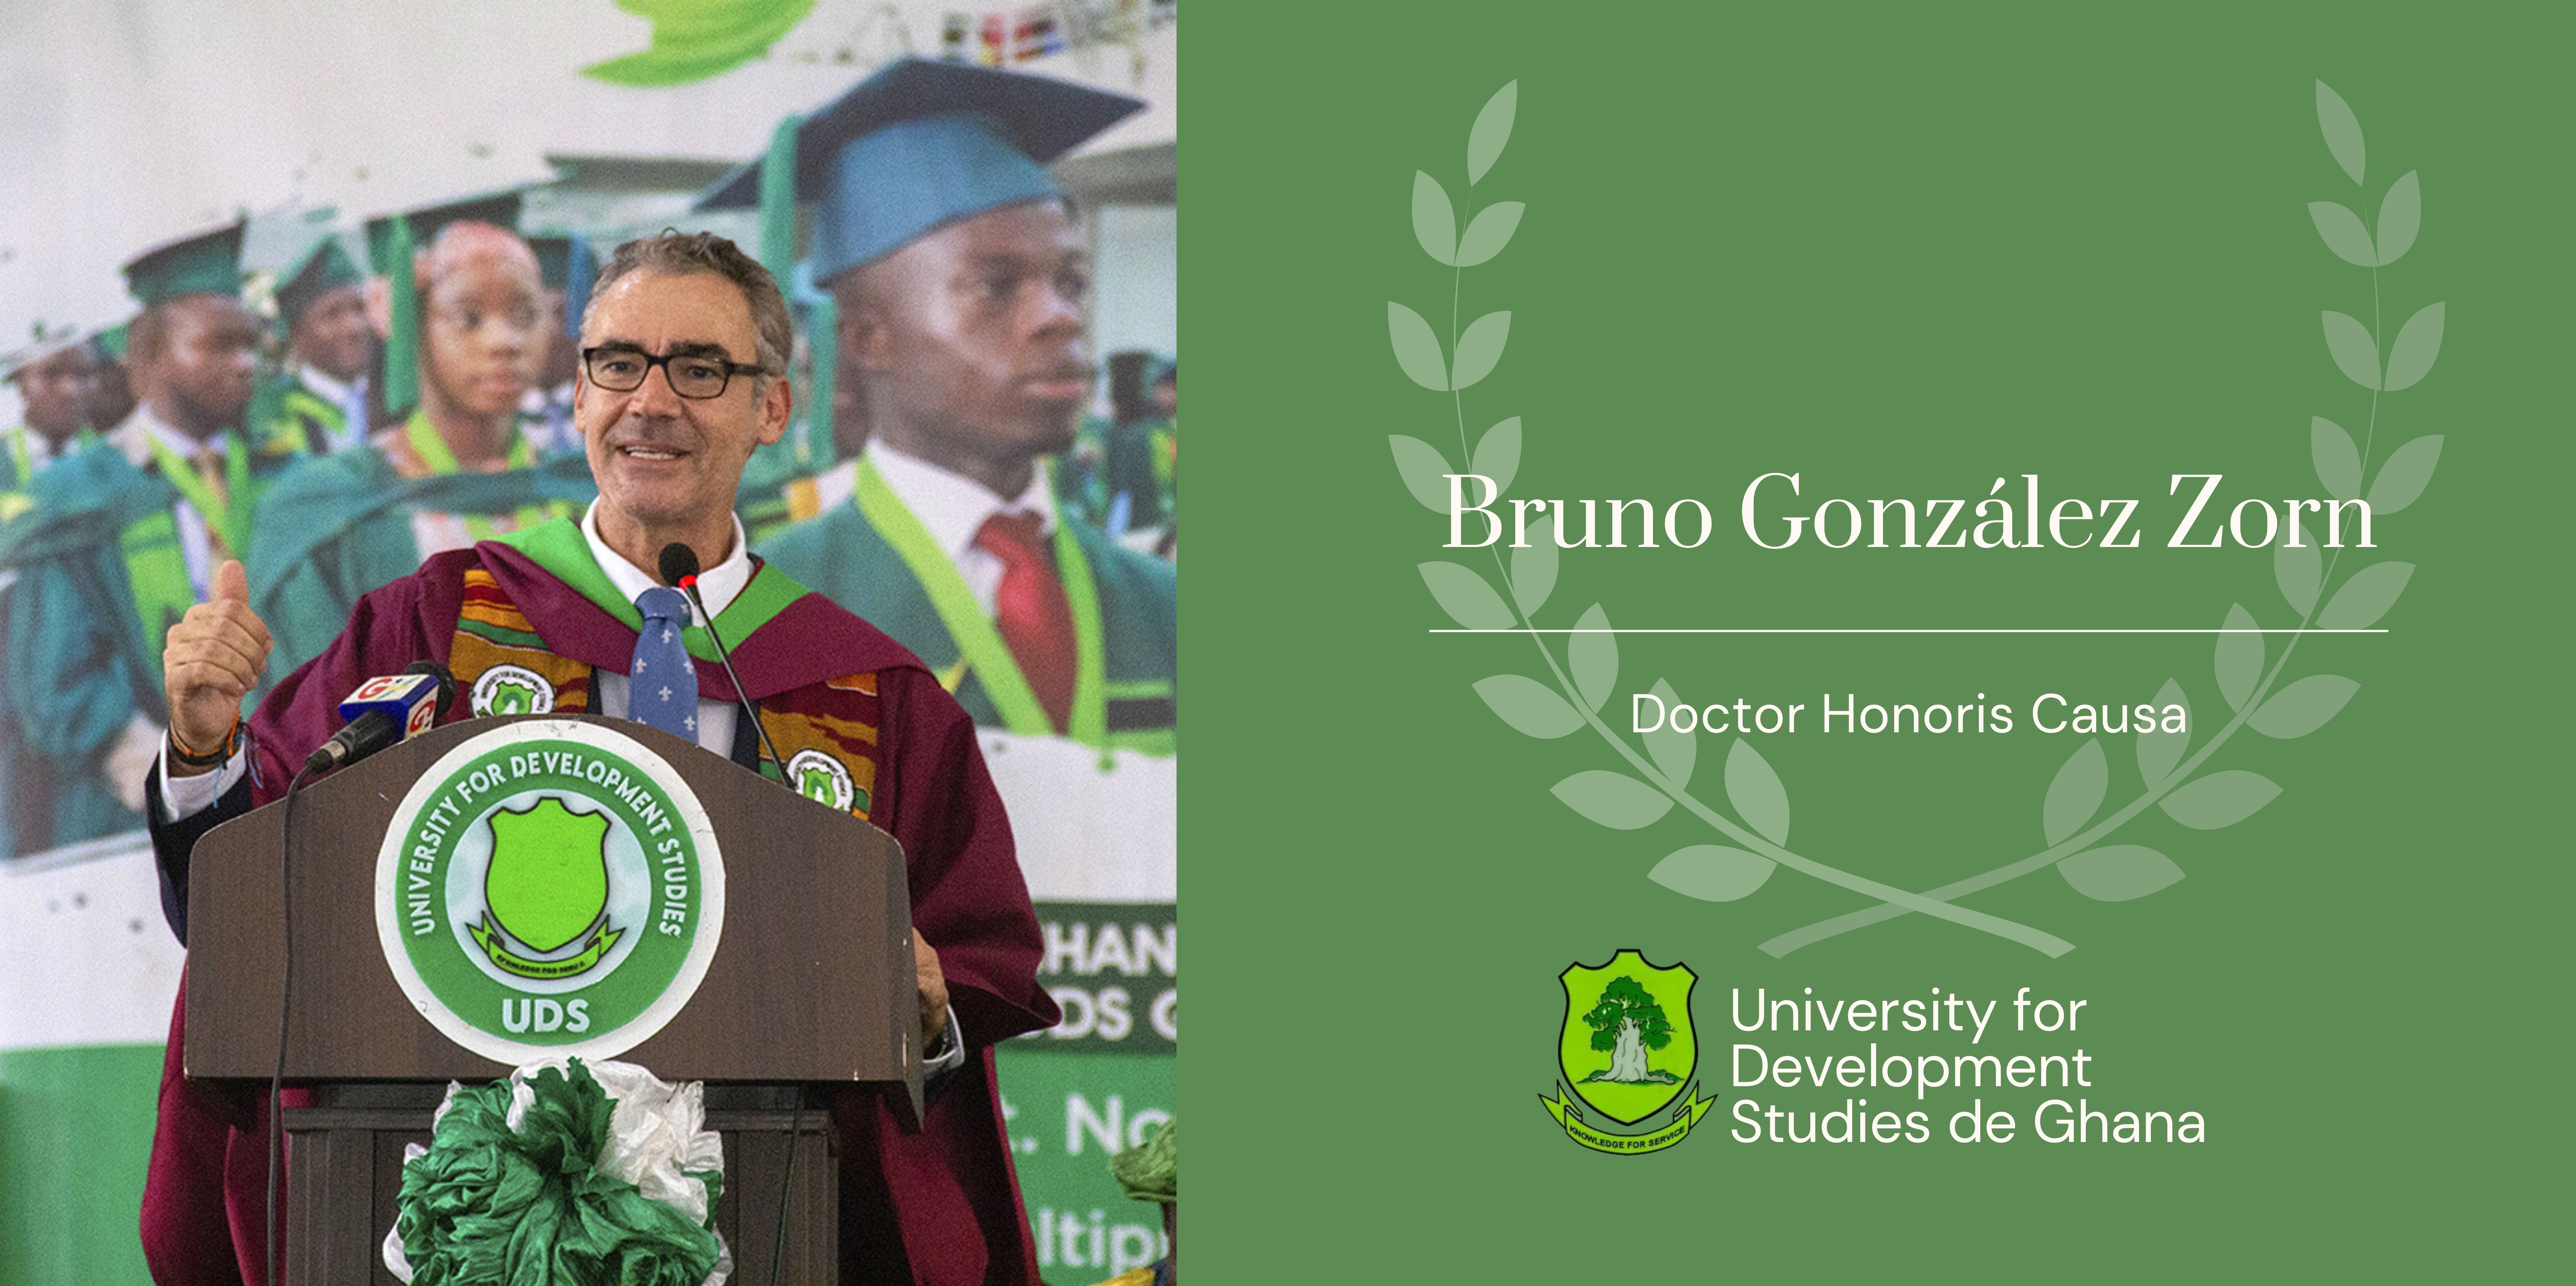 Nuestro Compañero Bruno González Zorn es nombrado Doctor Honoris Causa en Ghana